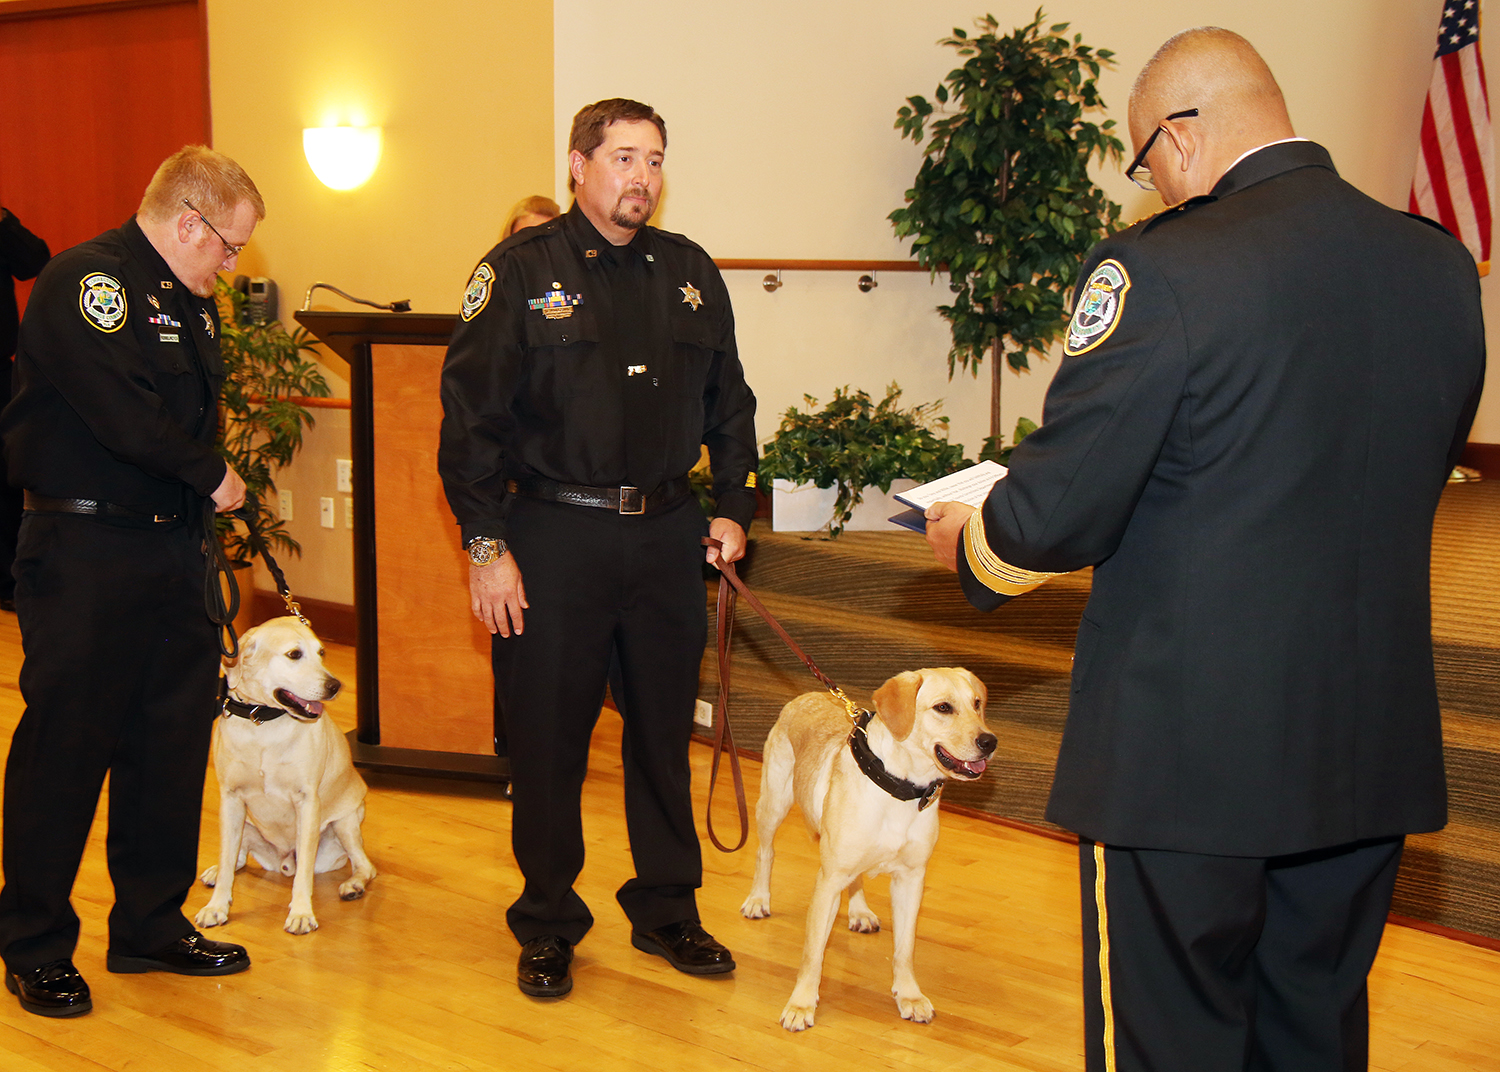 Dos oficiales sujetan de la correa a dos perros policía de la unidad K-9 mietras prestan juramento